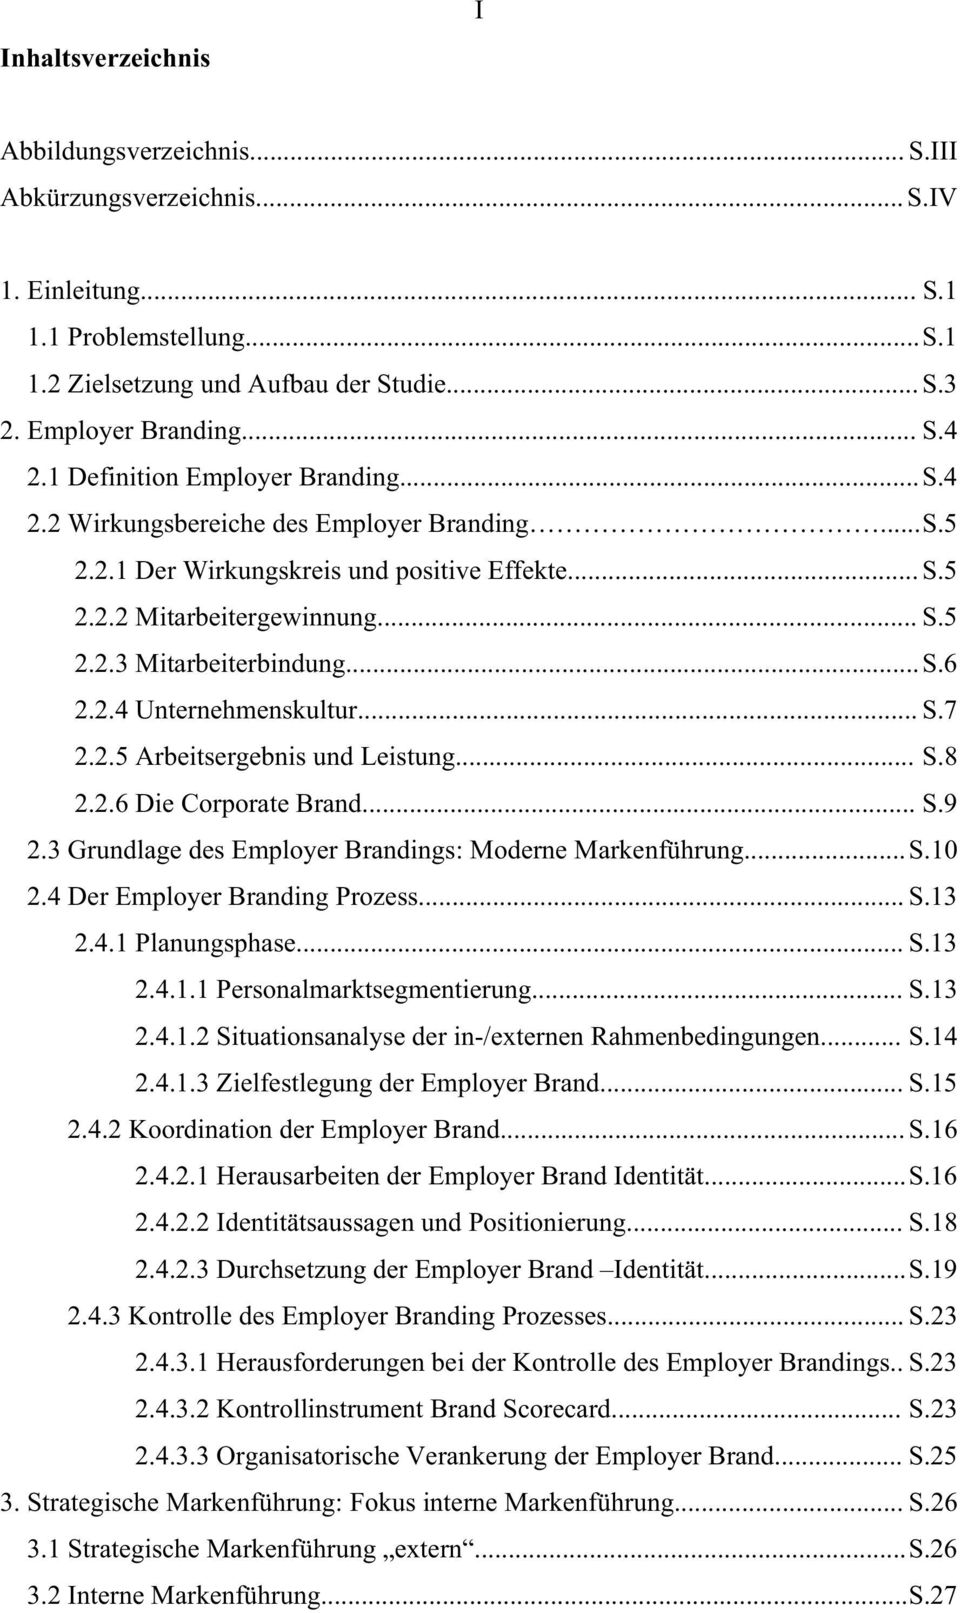 .. S.6 2.2.4 Unternehmenskultur... S.7 2.2.5 Arbeitsergebnis und Leistung... S.8 2.2.6 Die Corporate Brand... S.9 2.3 Grundlage des Employer Brandings: Moderne Markenführung... S.10 2.